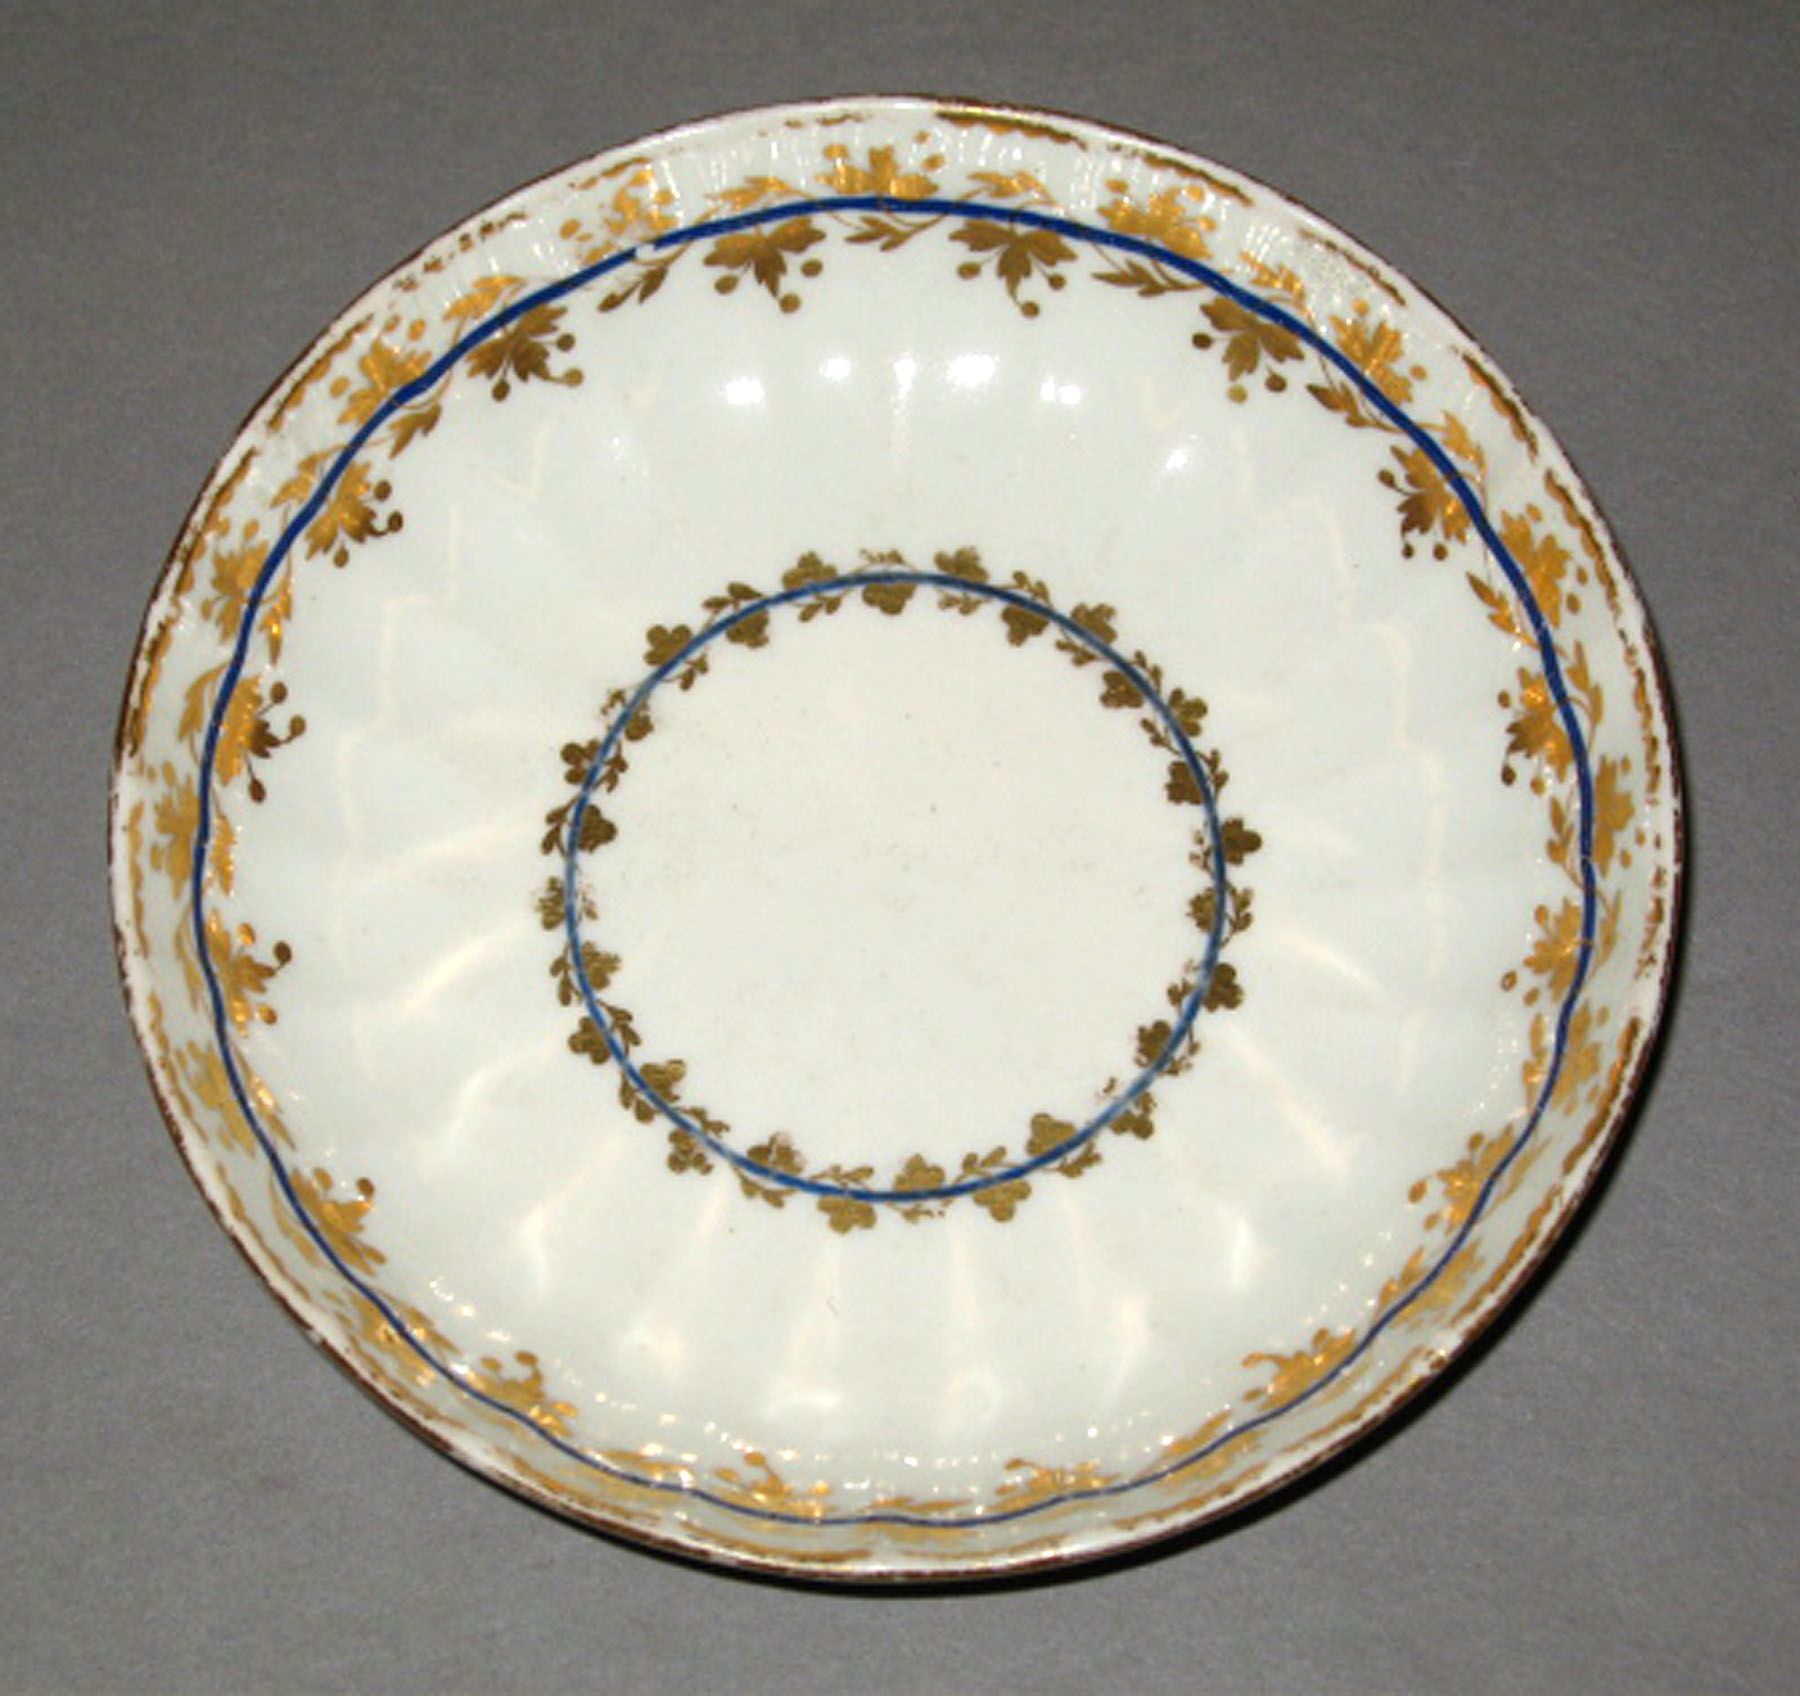 1964.0569.003 Derby porcelain saucer